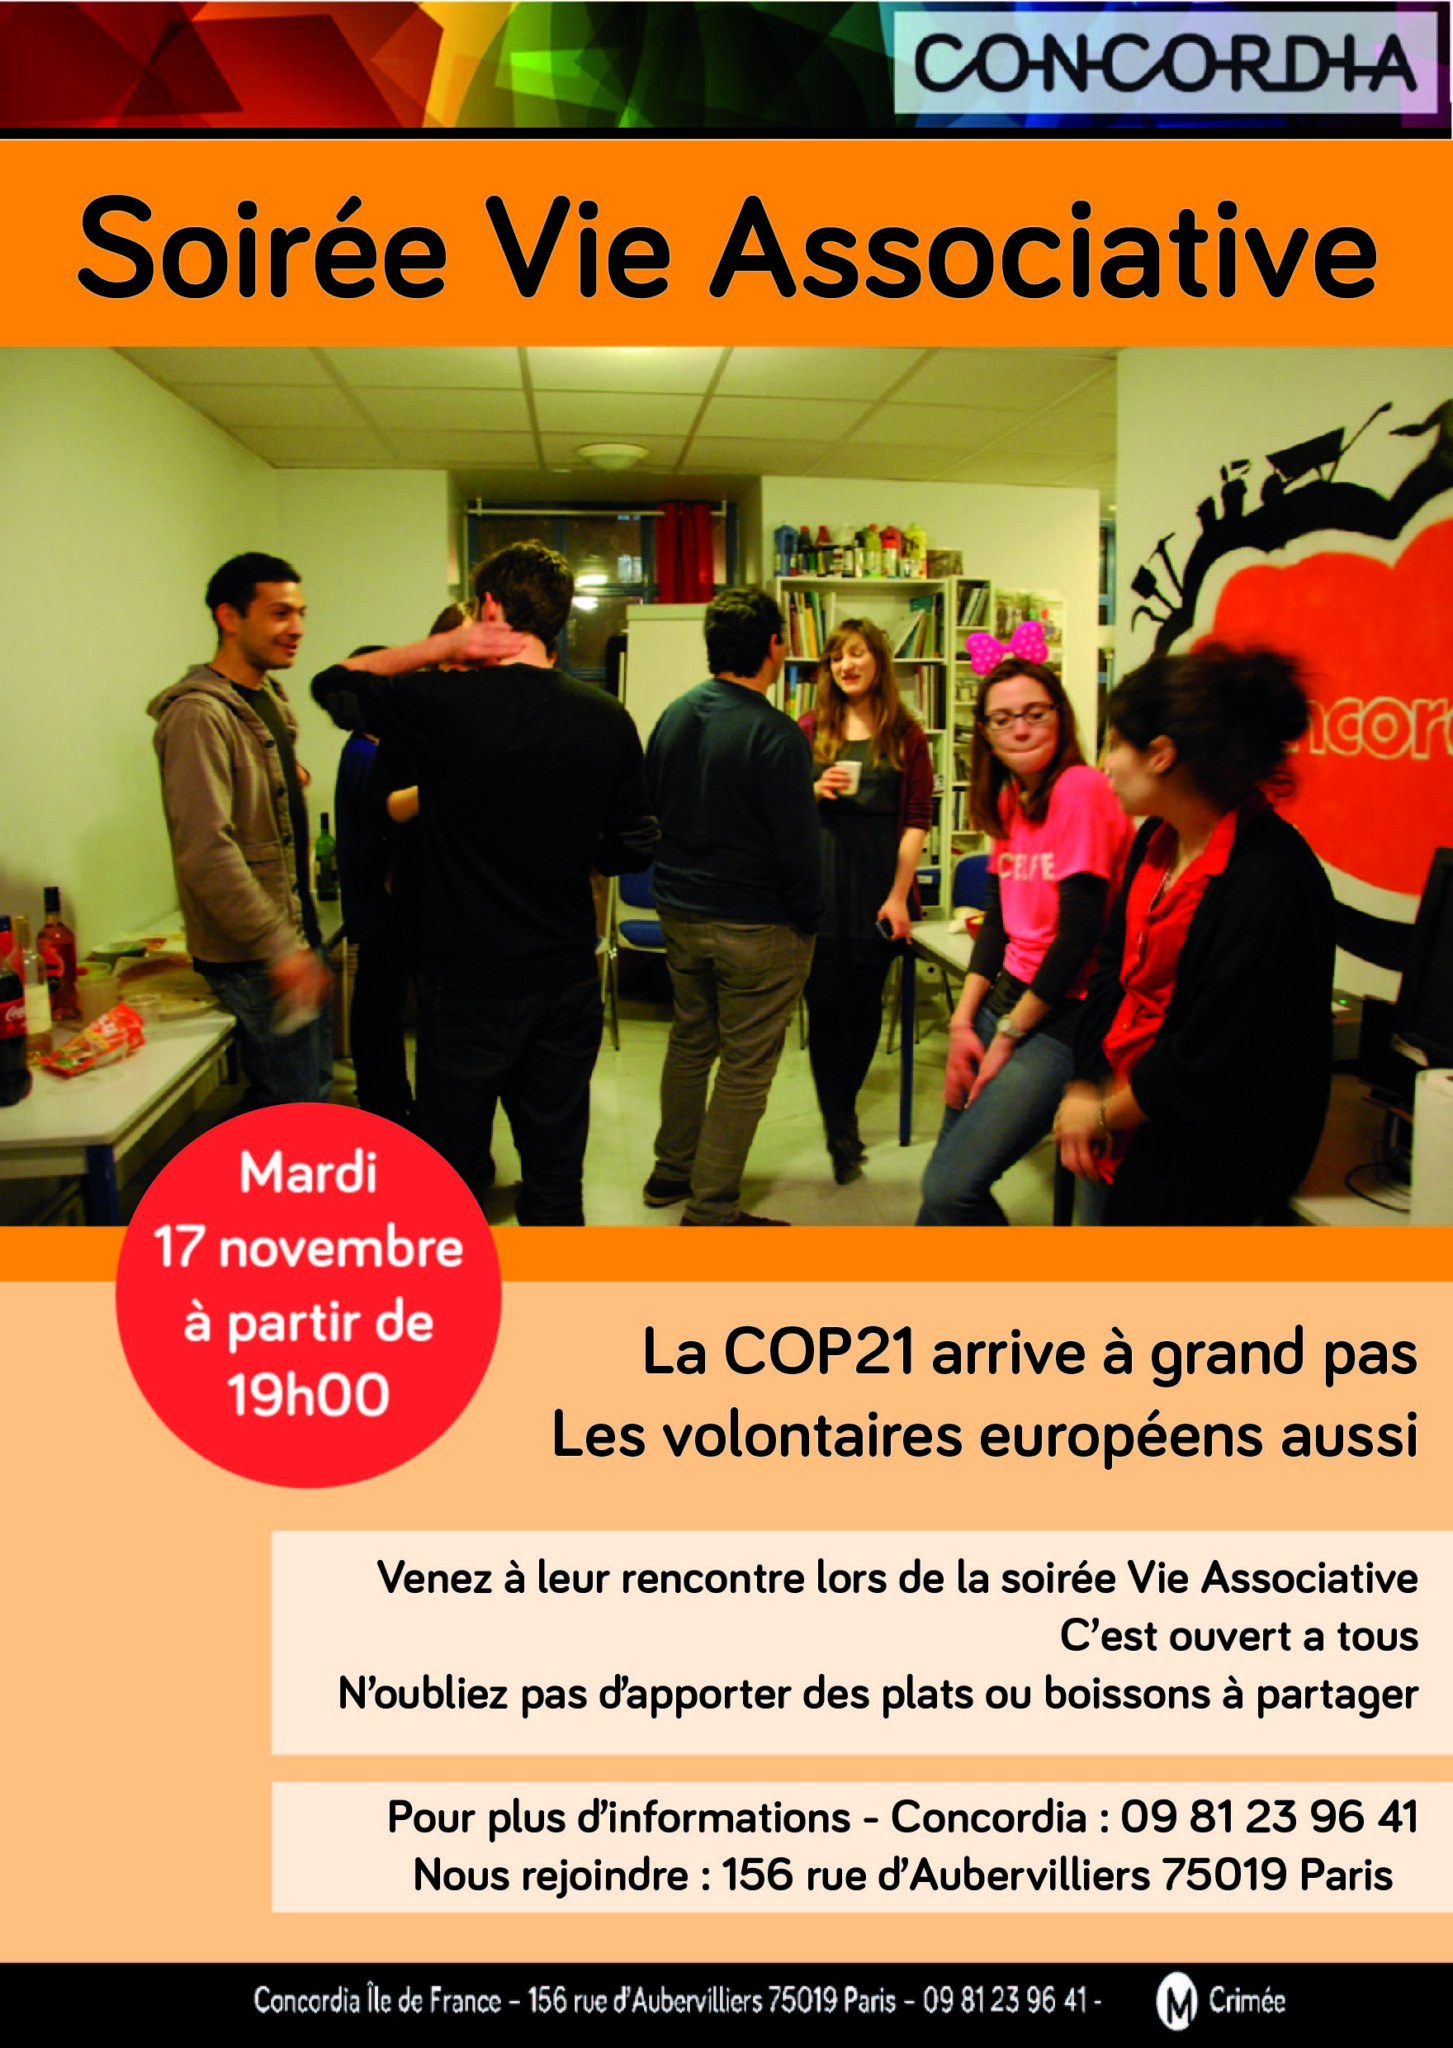 Concordia - Soirée Vie Associative le mardi 17 novembre à Paris !